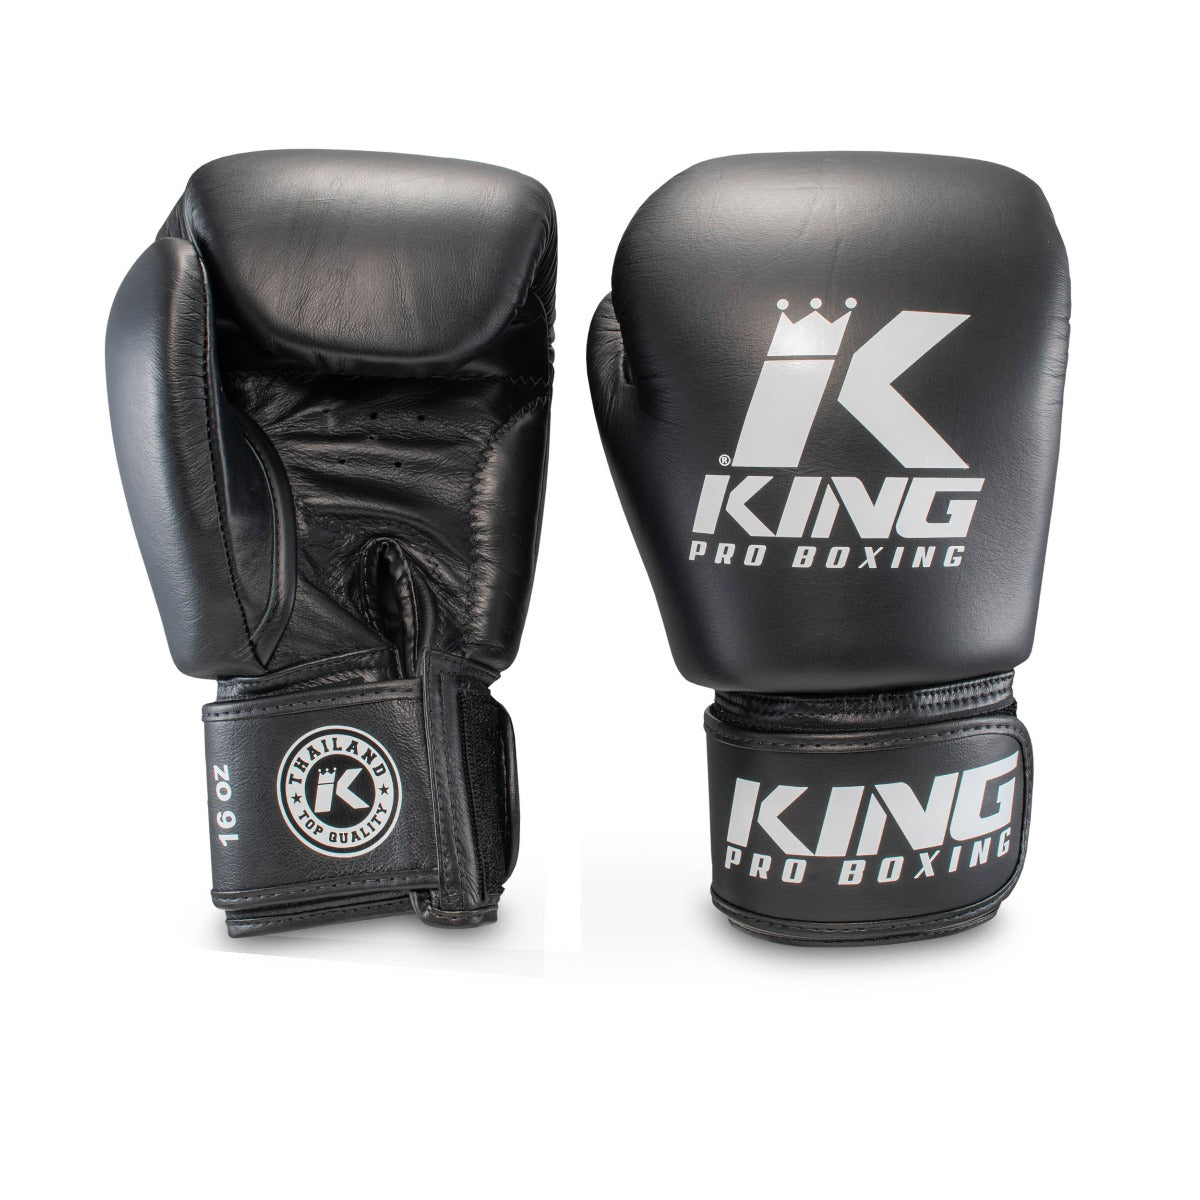 King PRO boxing boxing gloves - BGVL 3 BLACK